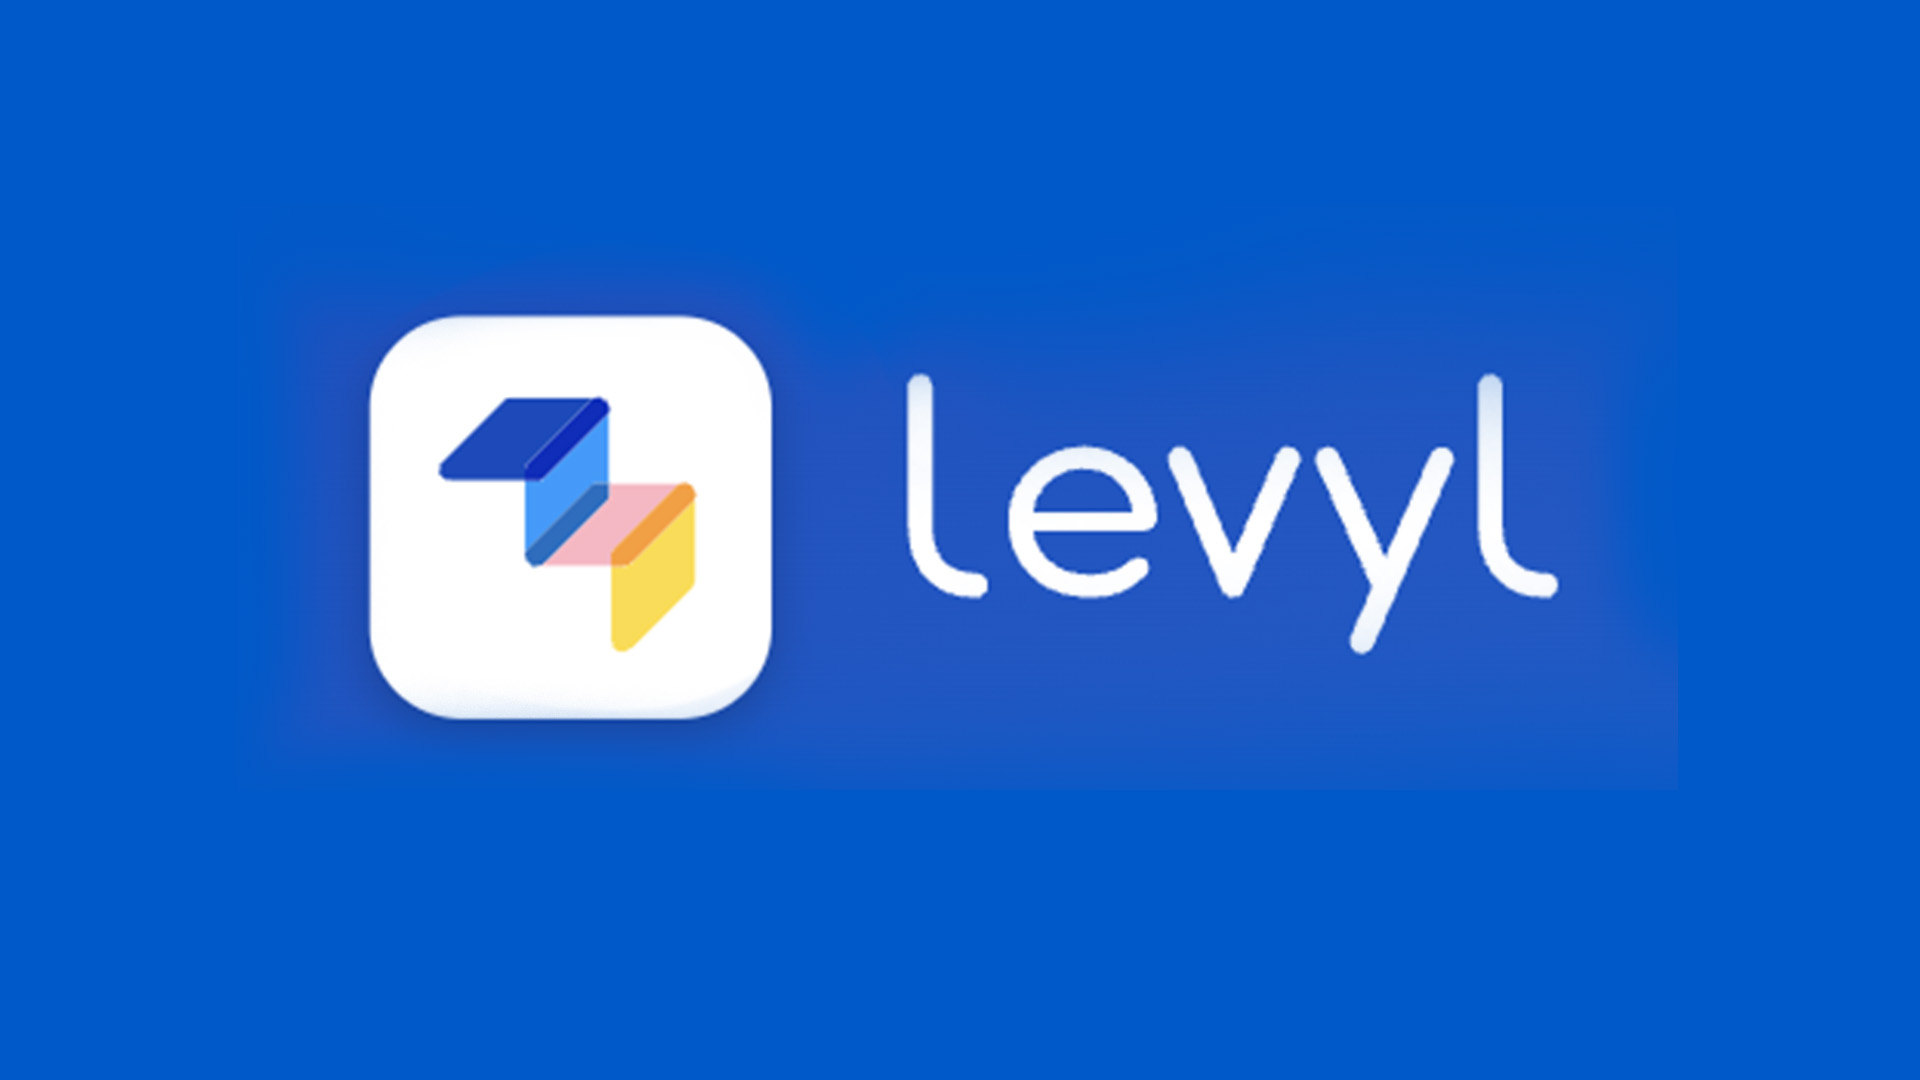 Levyl Logo